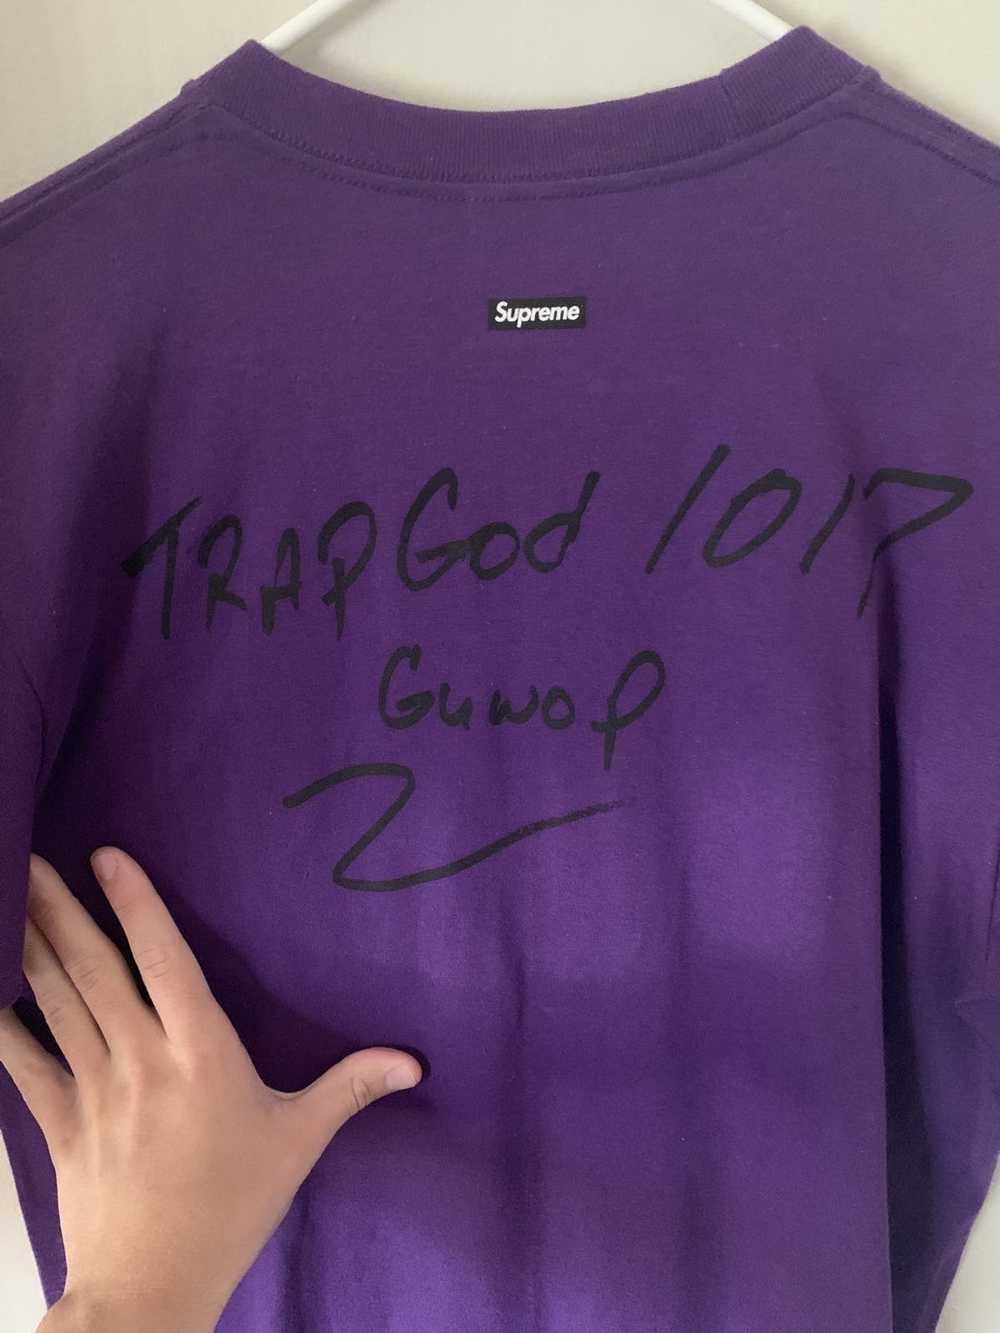 Supreme Supreme Gucci Mane Photo Tee purple - image 4